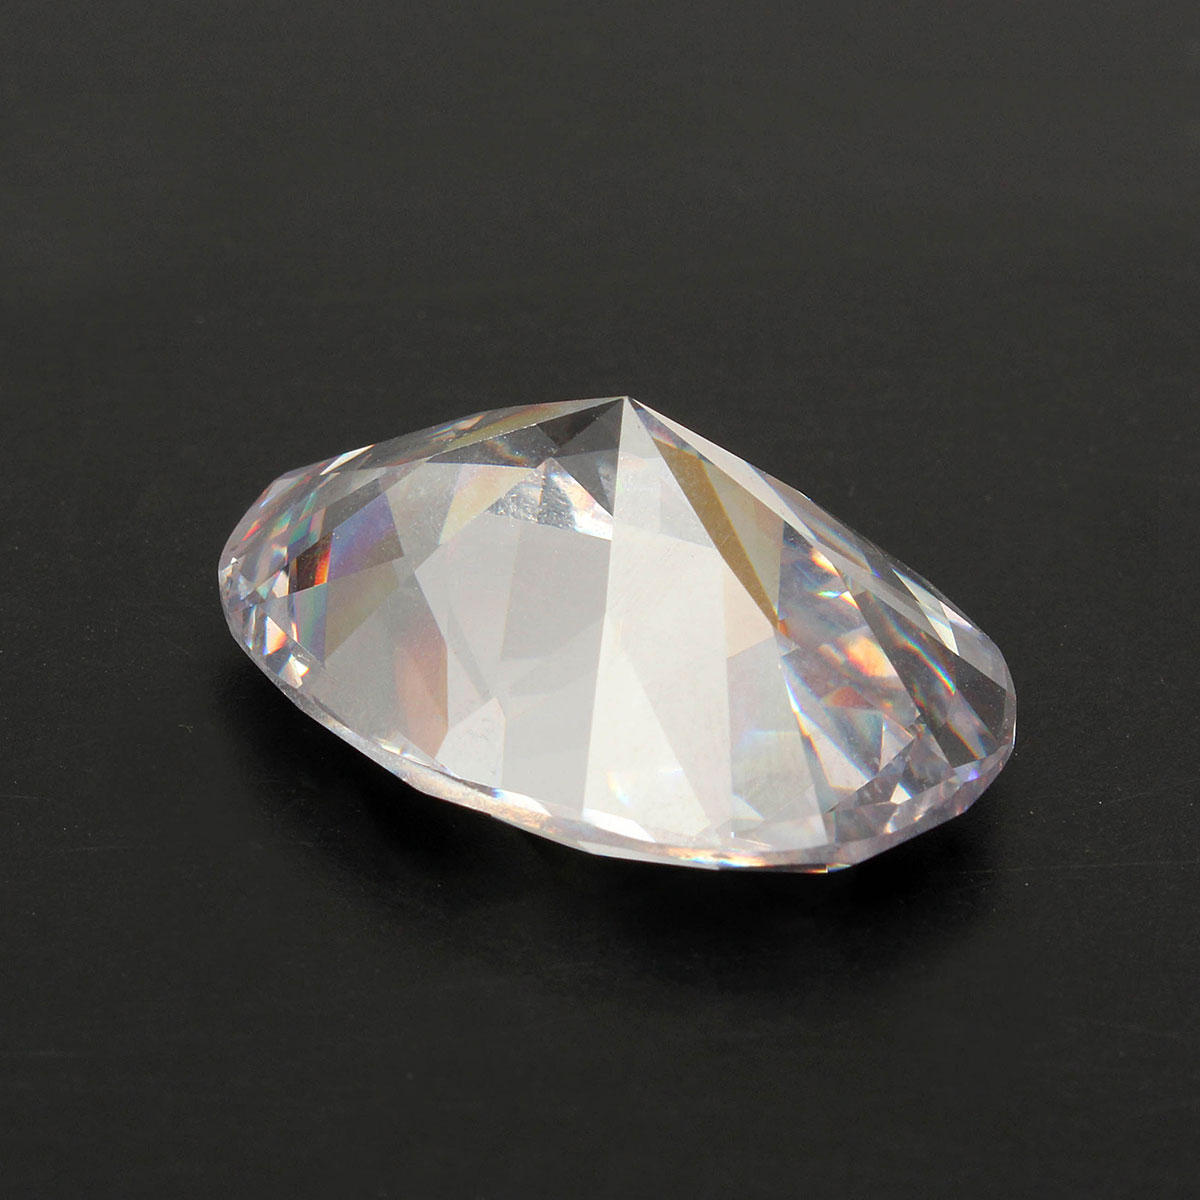 25mmx18mm artificial zircon round cut stunning white sapphire gemstone ...